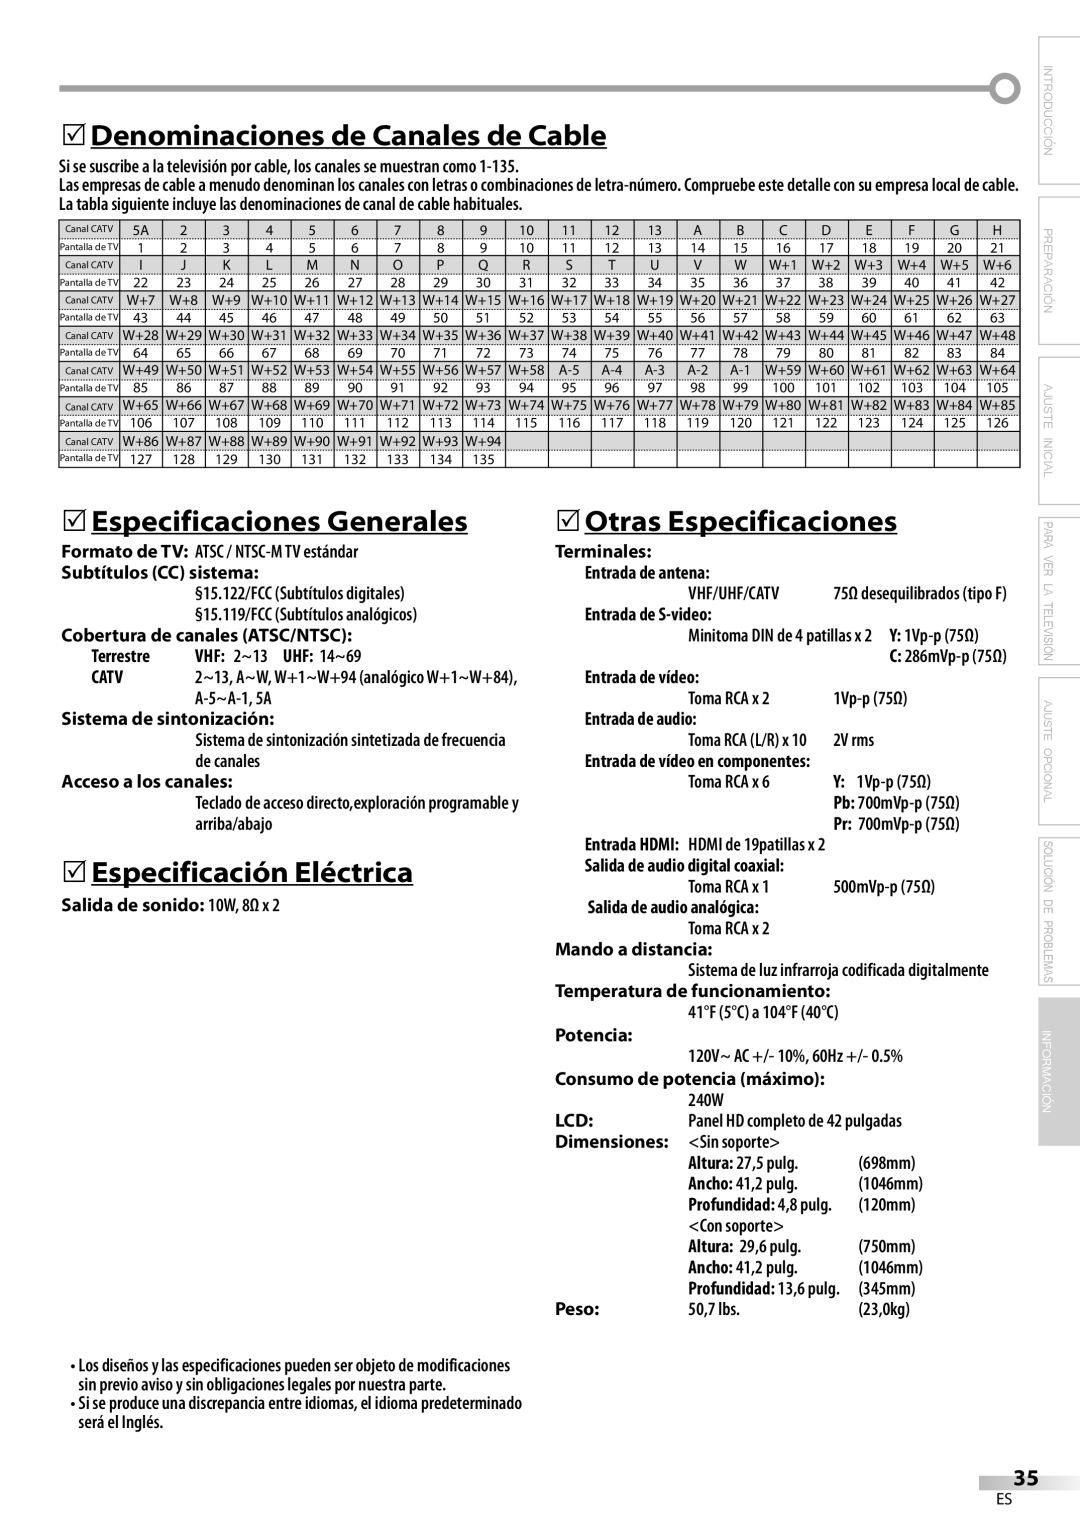 Emerson LC420EM8 owner manual 5Denominaciones de Canales de Cable, 5Especificaciones Generales, 5Especificación Eléctrica 